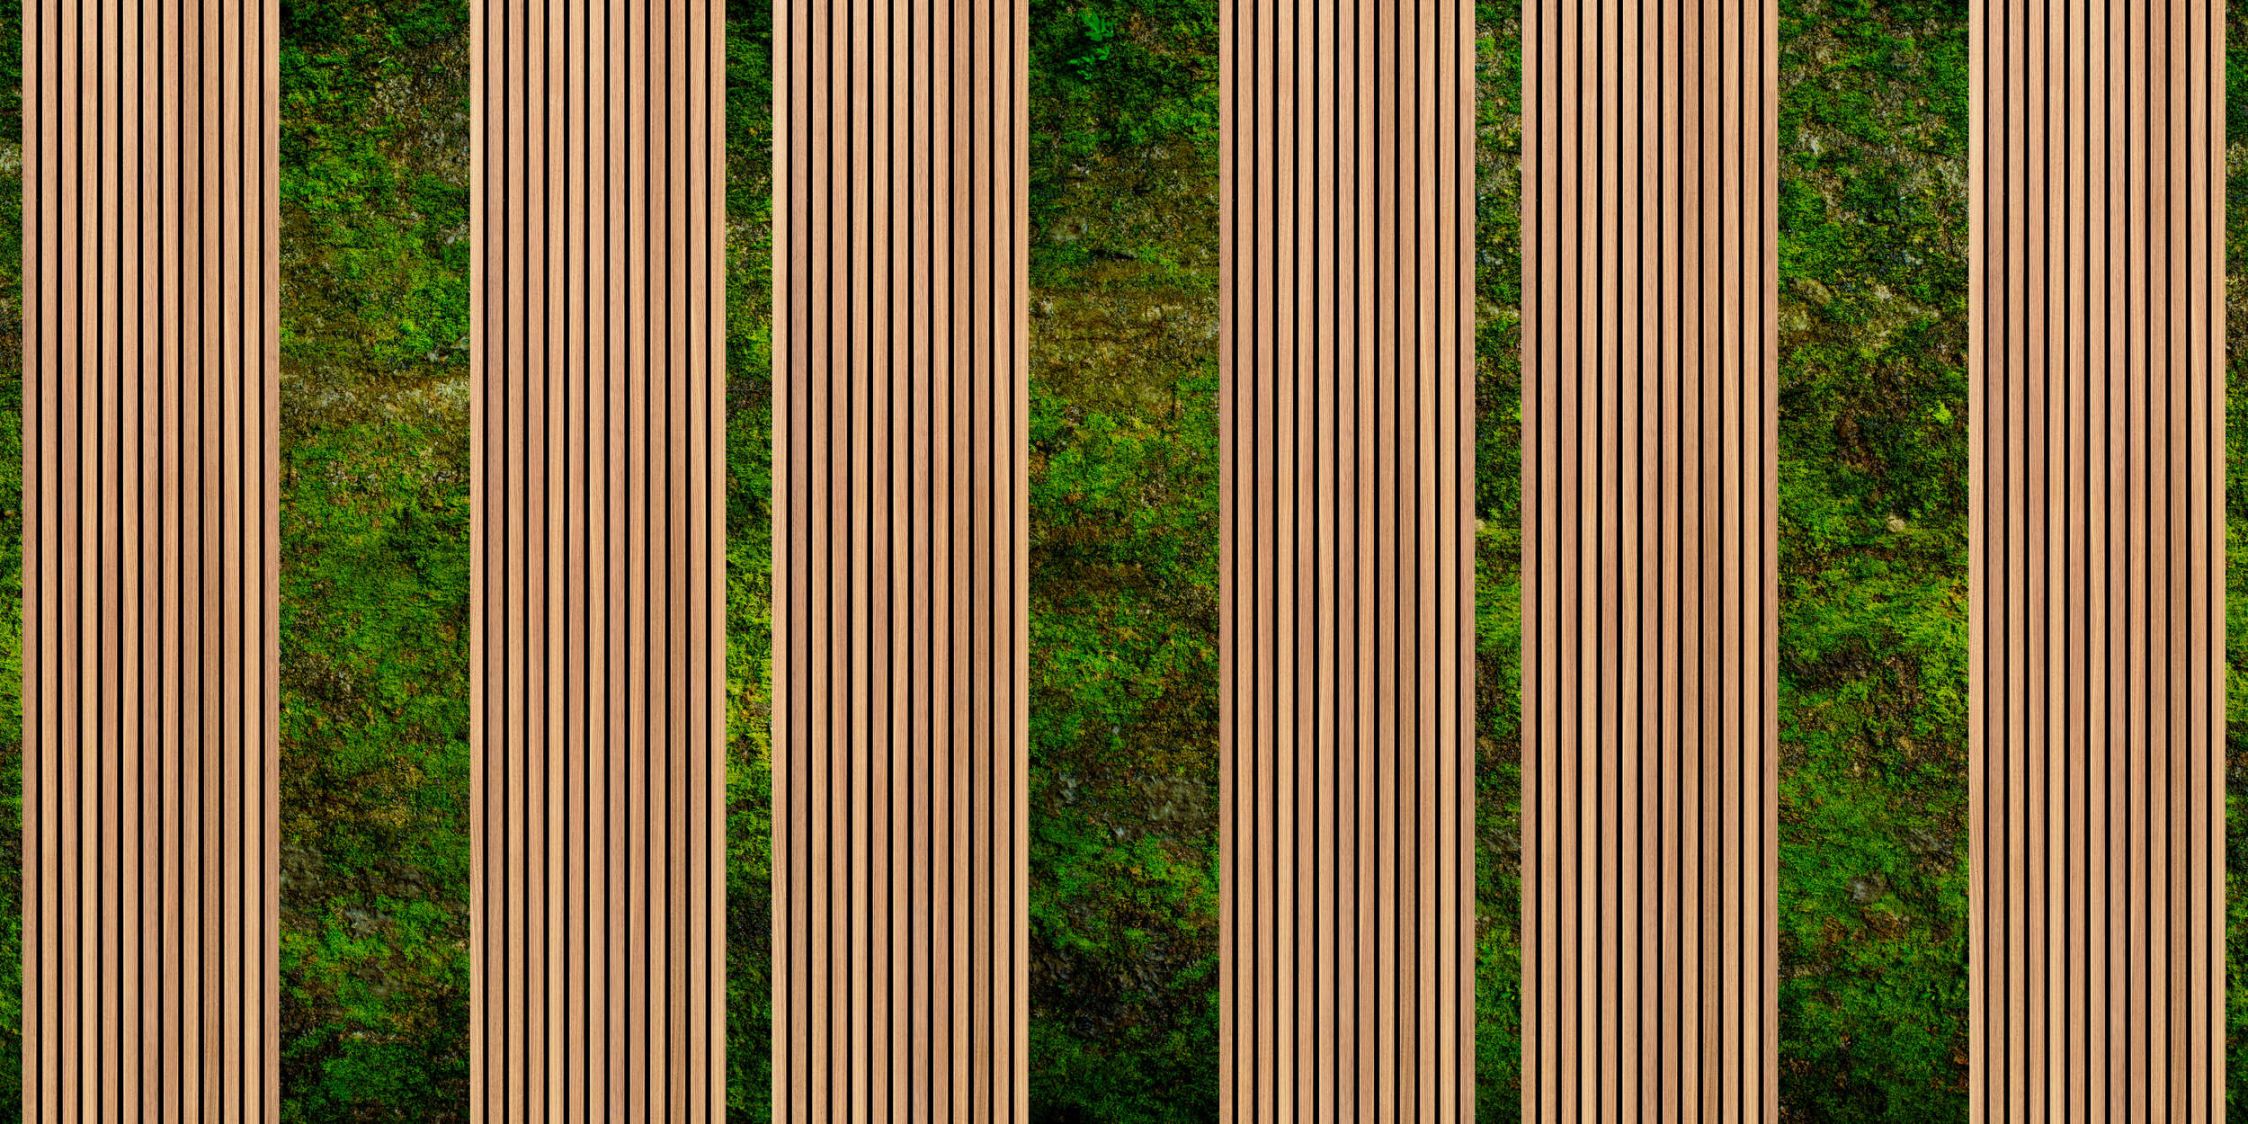             Fotomural »panel 1« - Paneles estrechos de madera y musgo - Tela no tejida lisa y mate
        